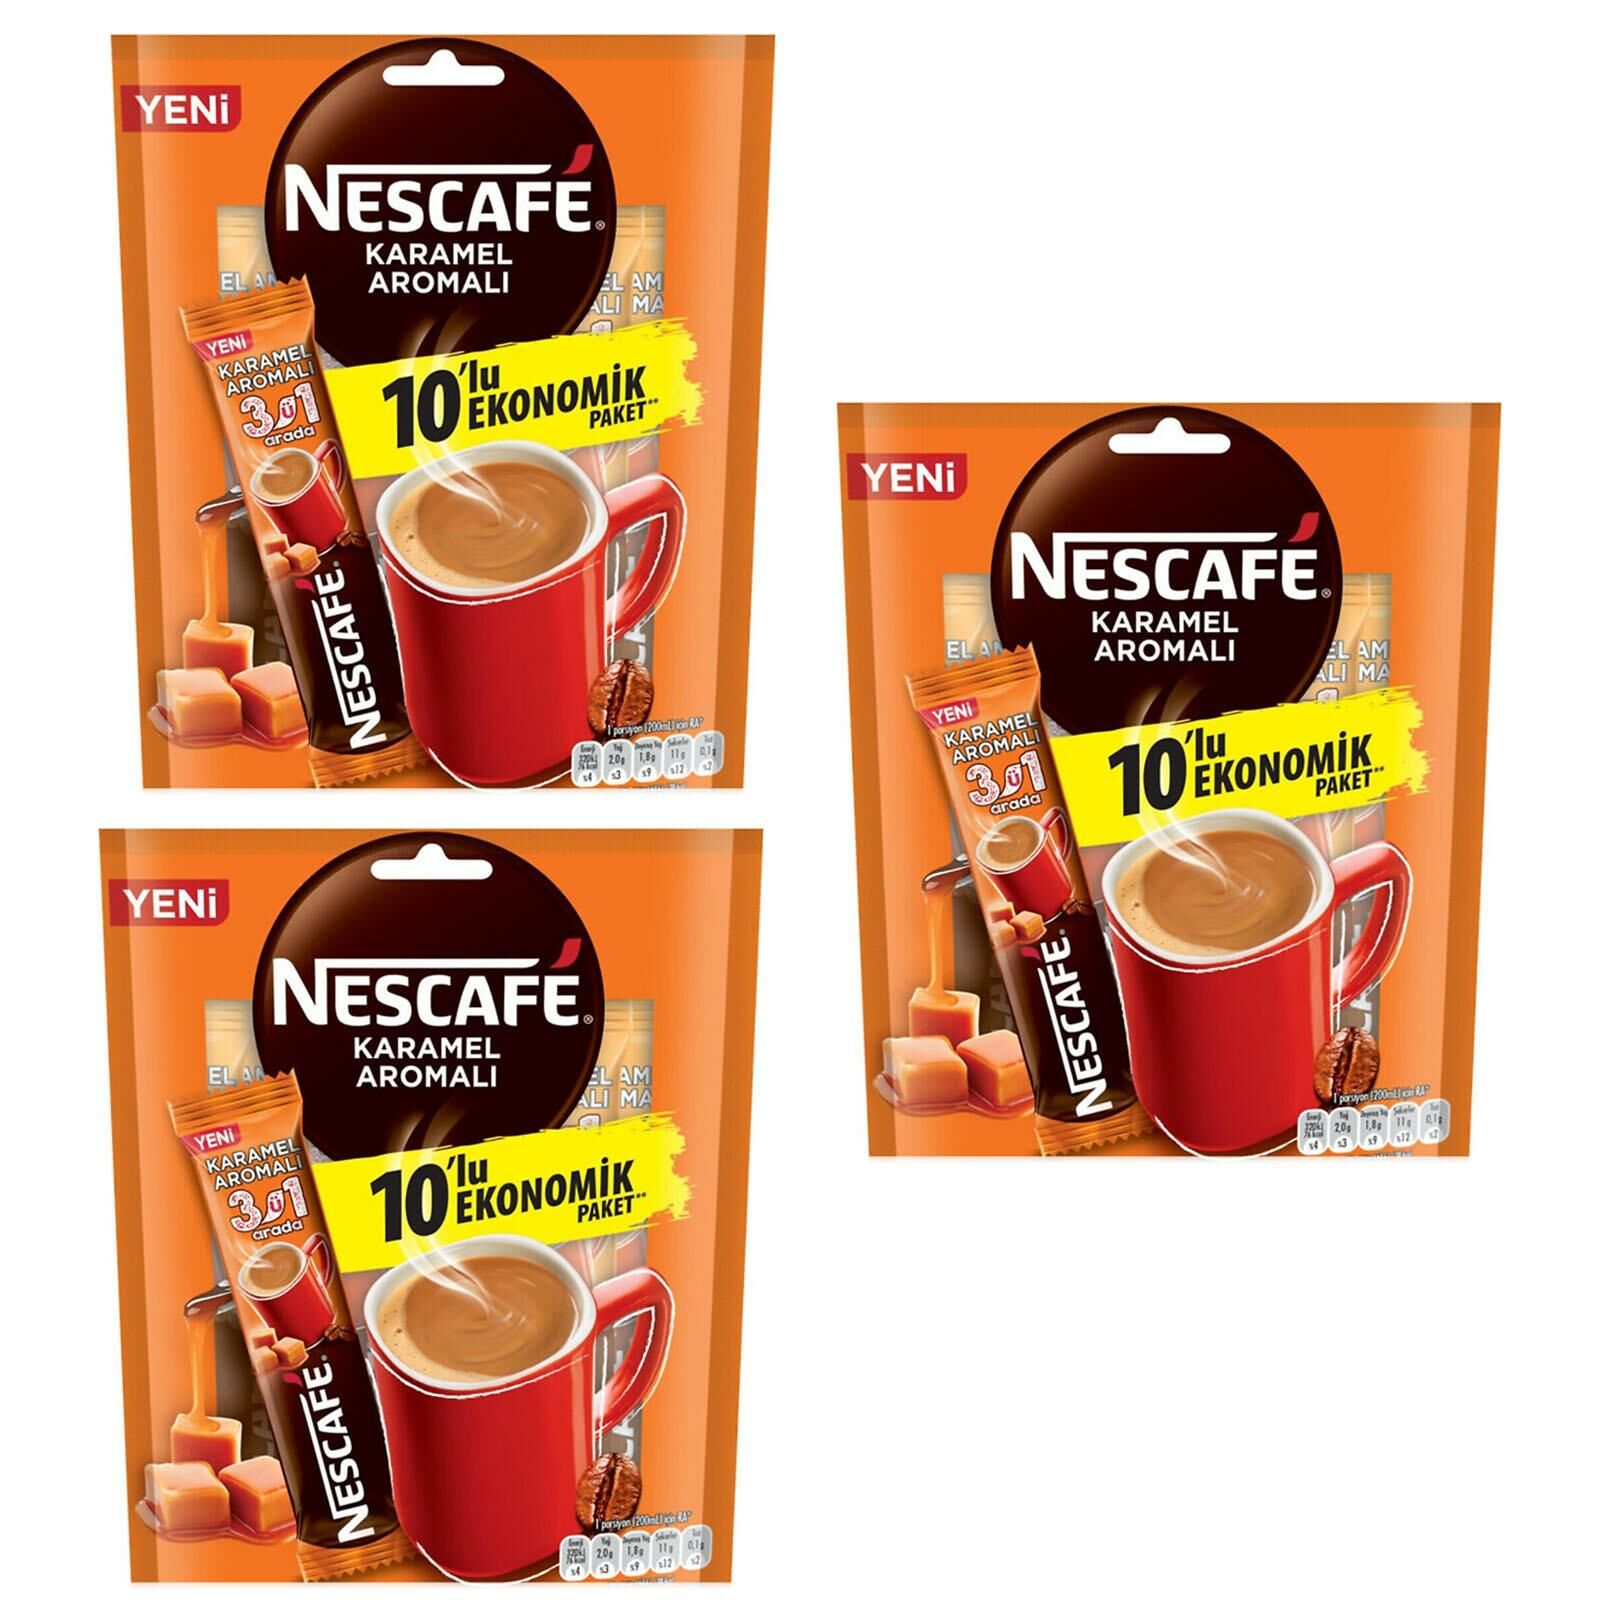 Nescafe Karamel Aromalı 3 ü 1 Arada Hazır Kahve 10 lu Ekonomik Paket 3 ADET